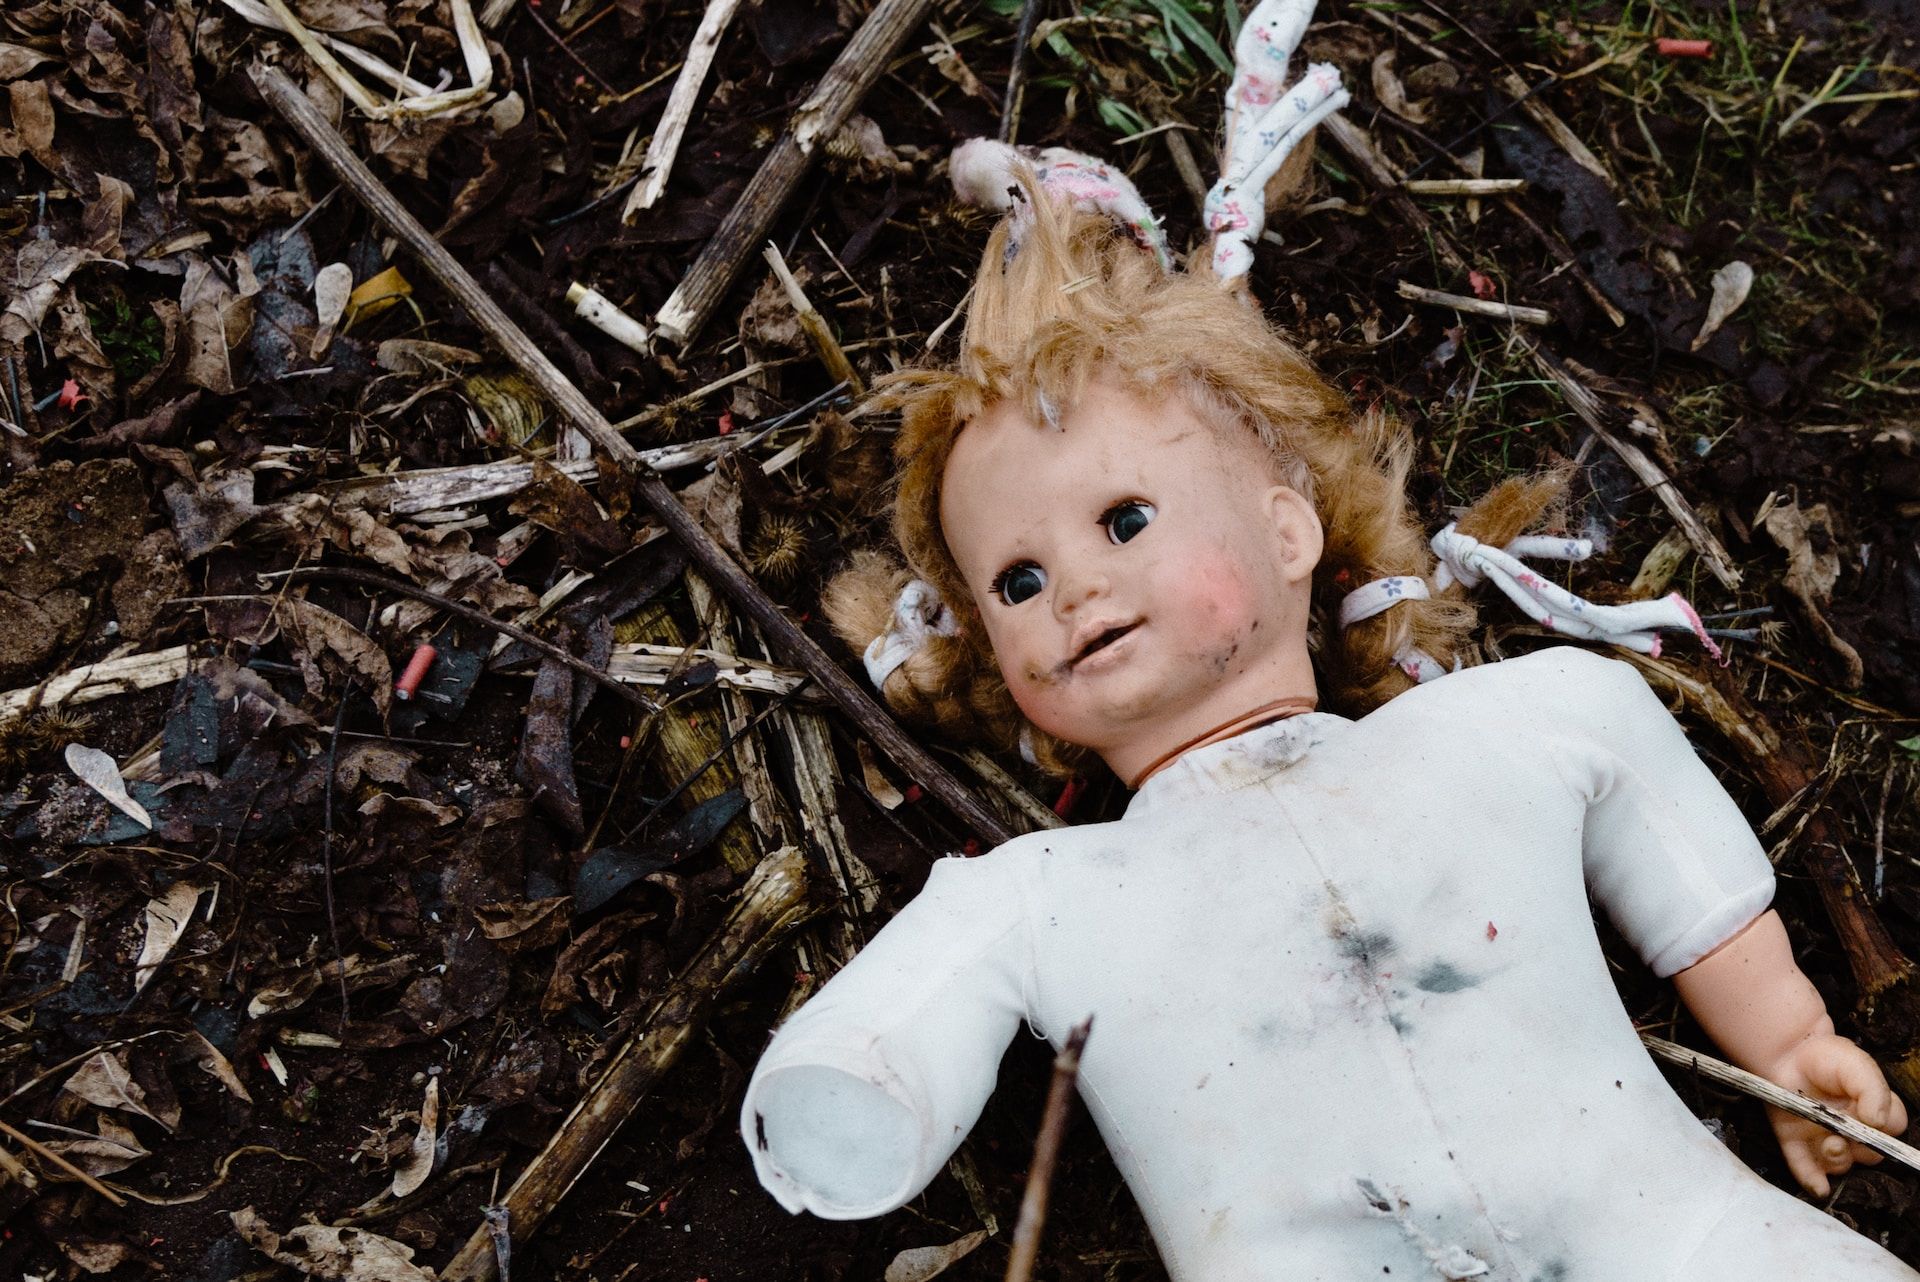 poupée abîmée et salie dans la nature - Photo by Artem Maltsev on https://unsplash.com/fr/photos/fille-en-chemise-blanche-a-manches-longues-couchee-sur-des-feuilles-sechees-o0DSot0OSjU